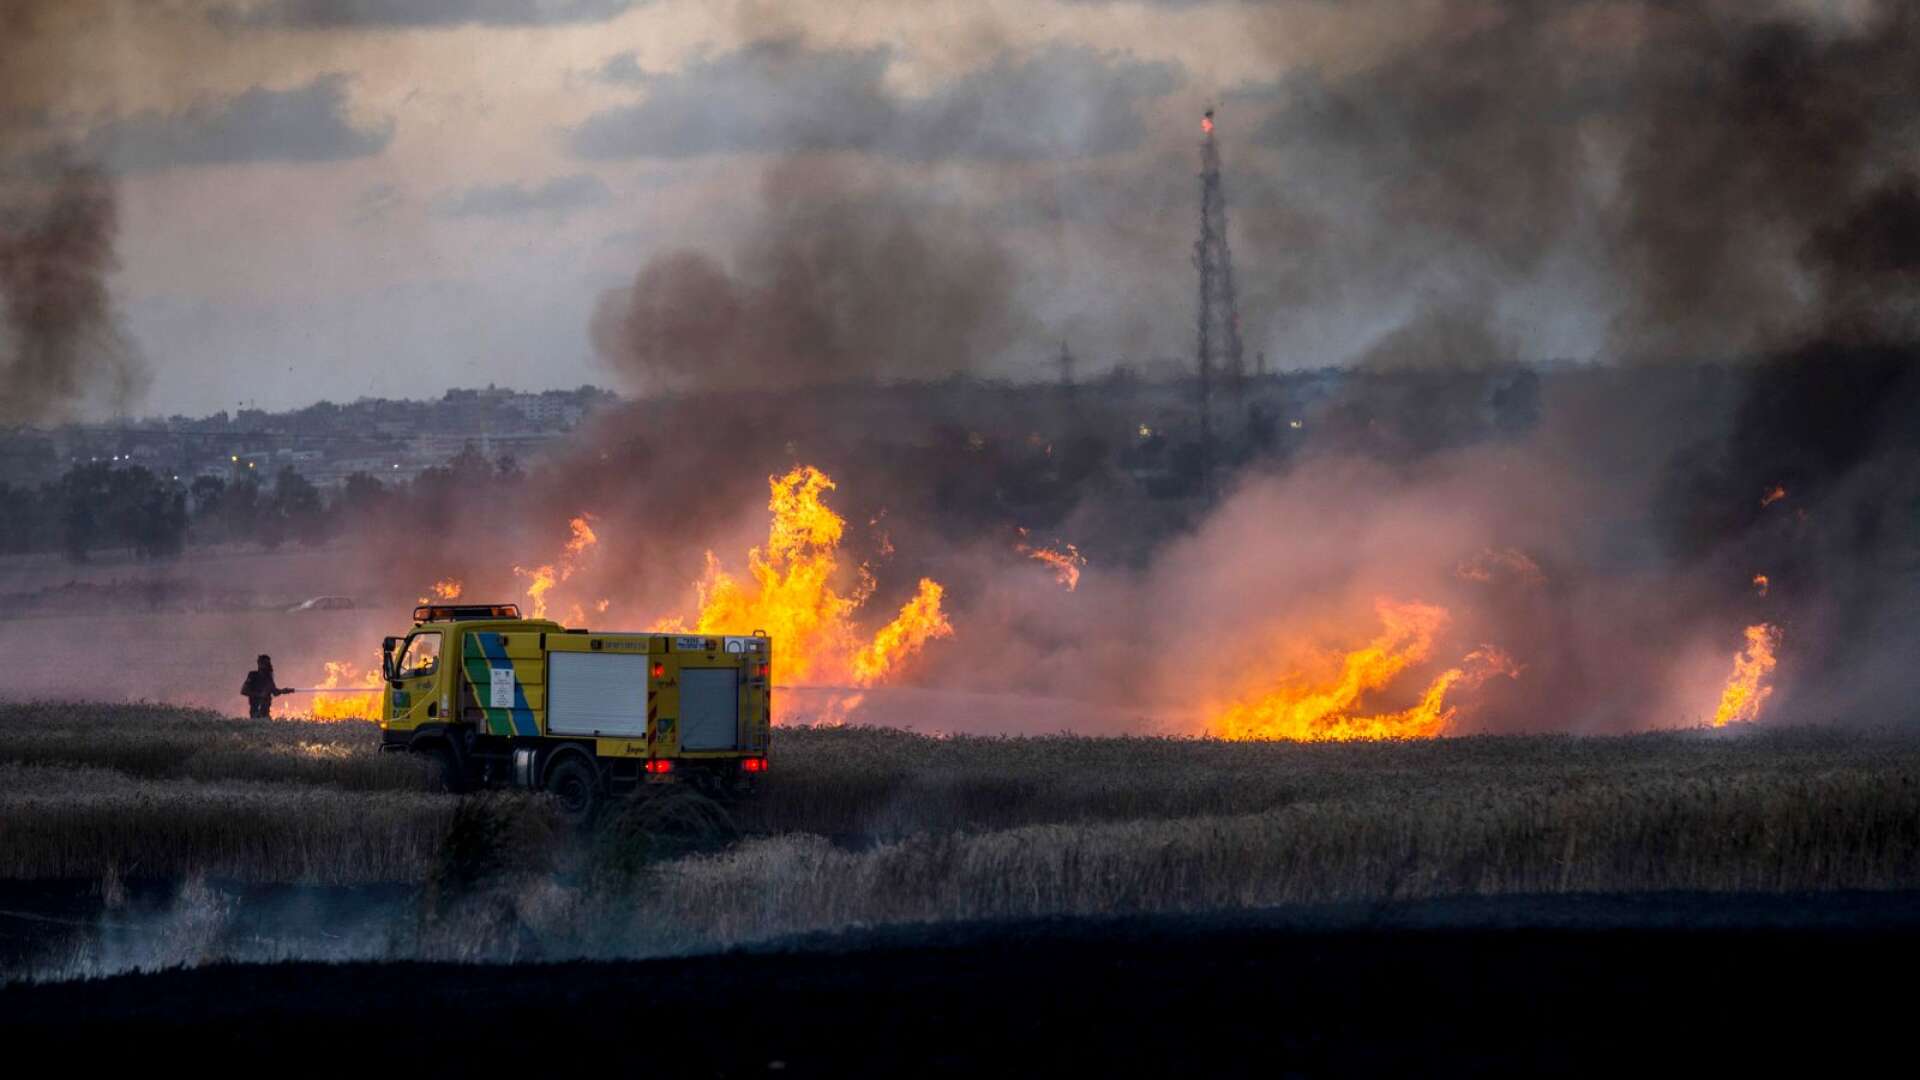 Enligt uppgift förorsakade de tusental brandbomberna från Gazaområdet i genomsnitt 24 bränder per dygn på israelisk mark förra sommaren, skriver Ann-Britt Höglund Andersson och Bertil Andersson.